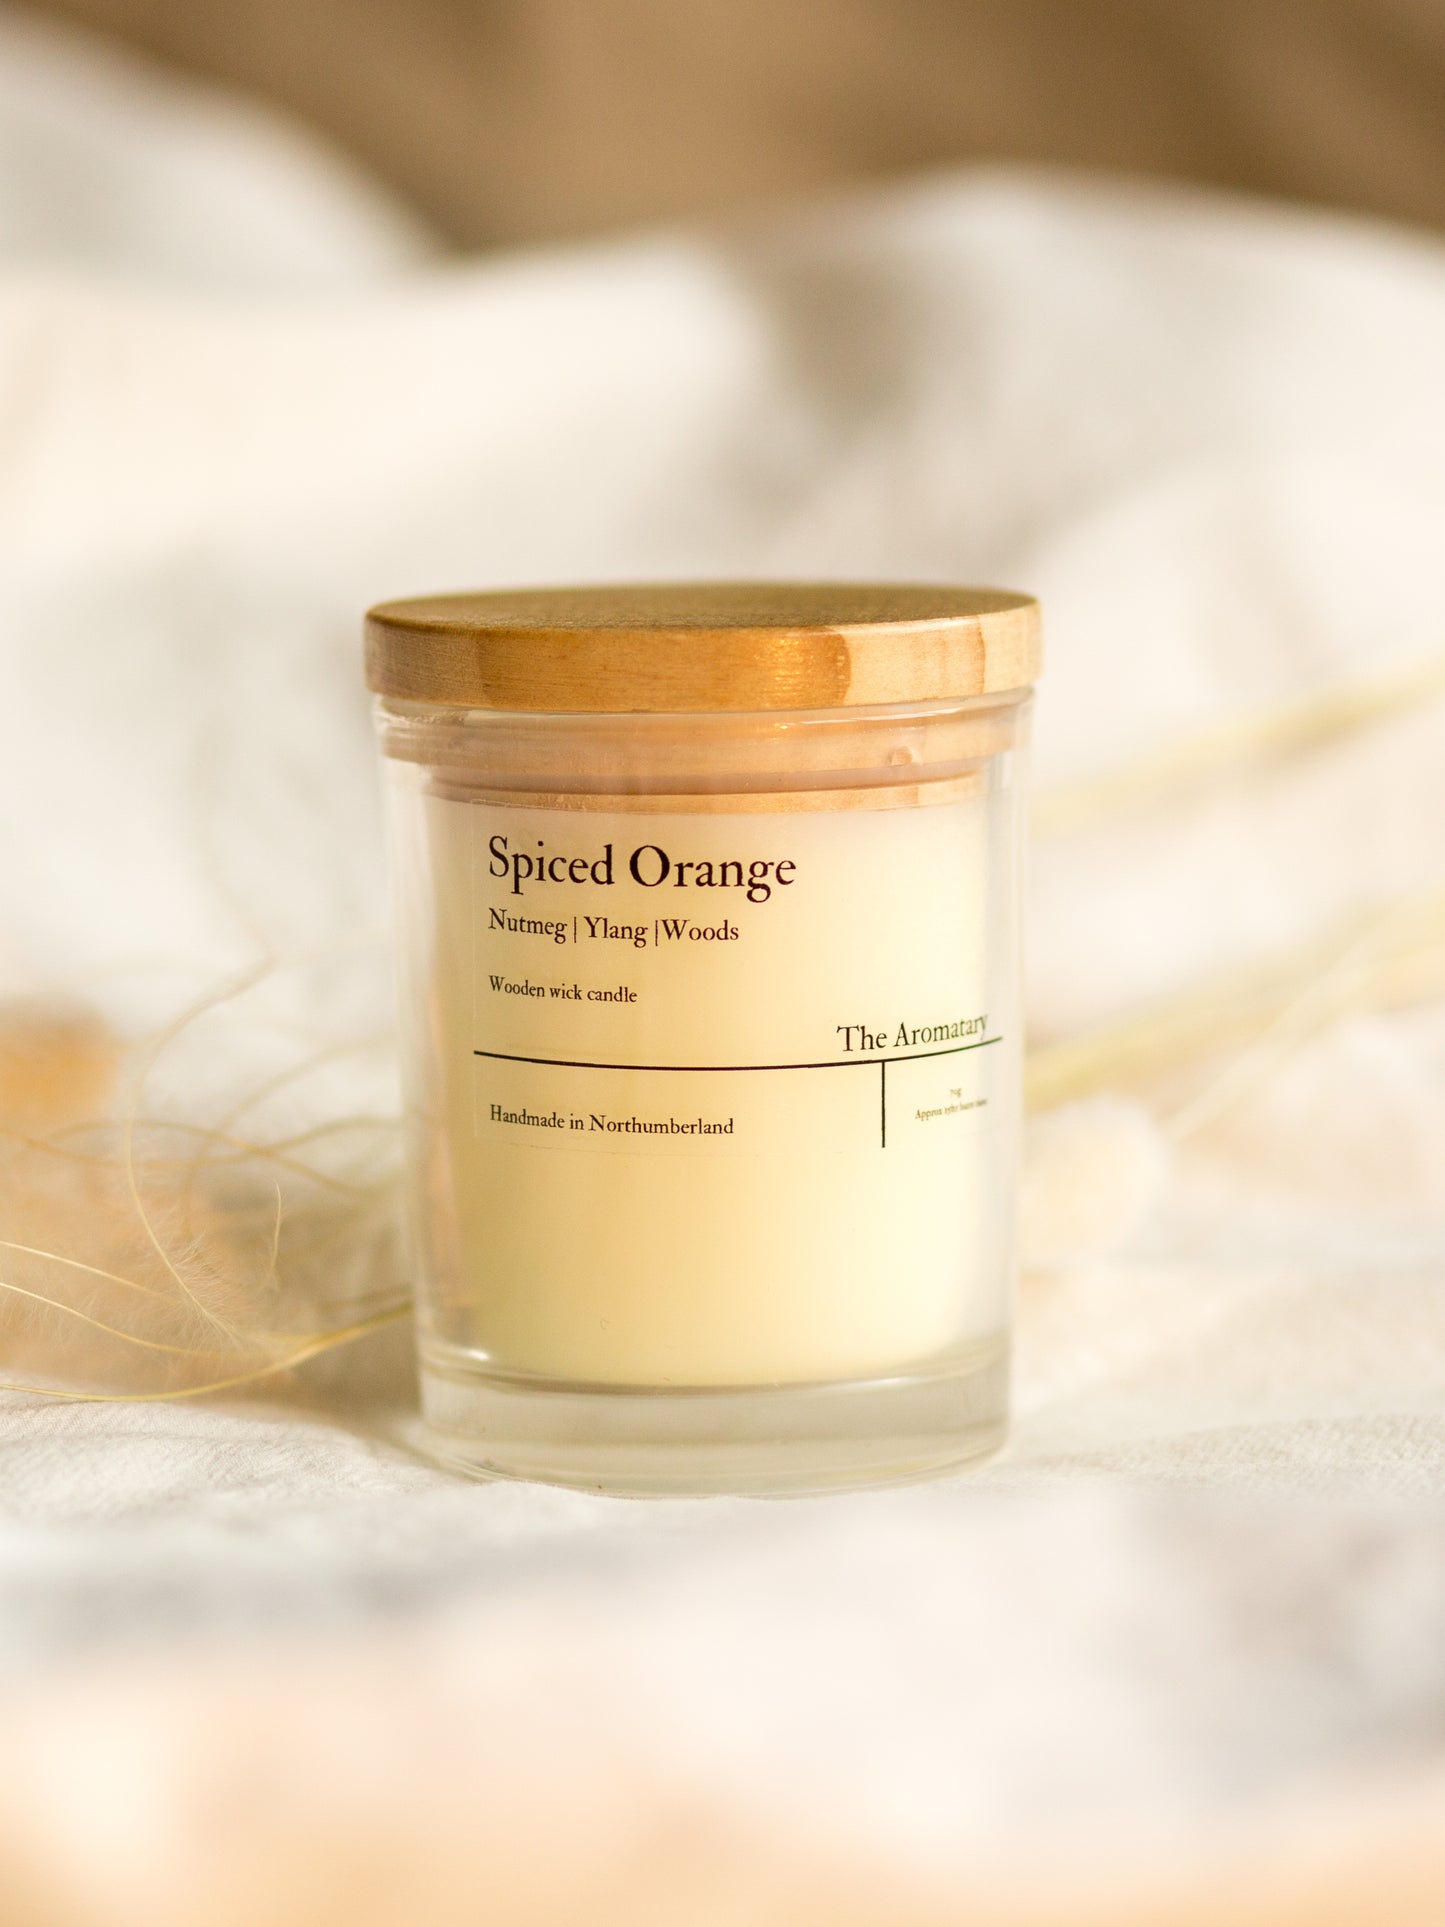 Spiced Orange wooden wick votive